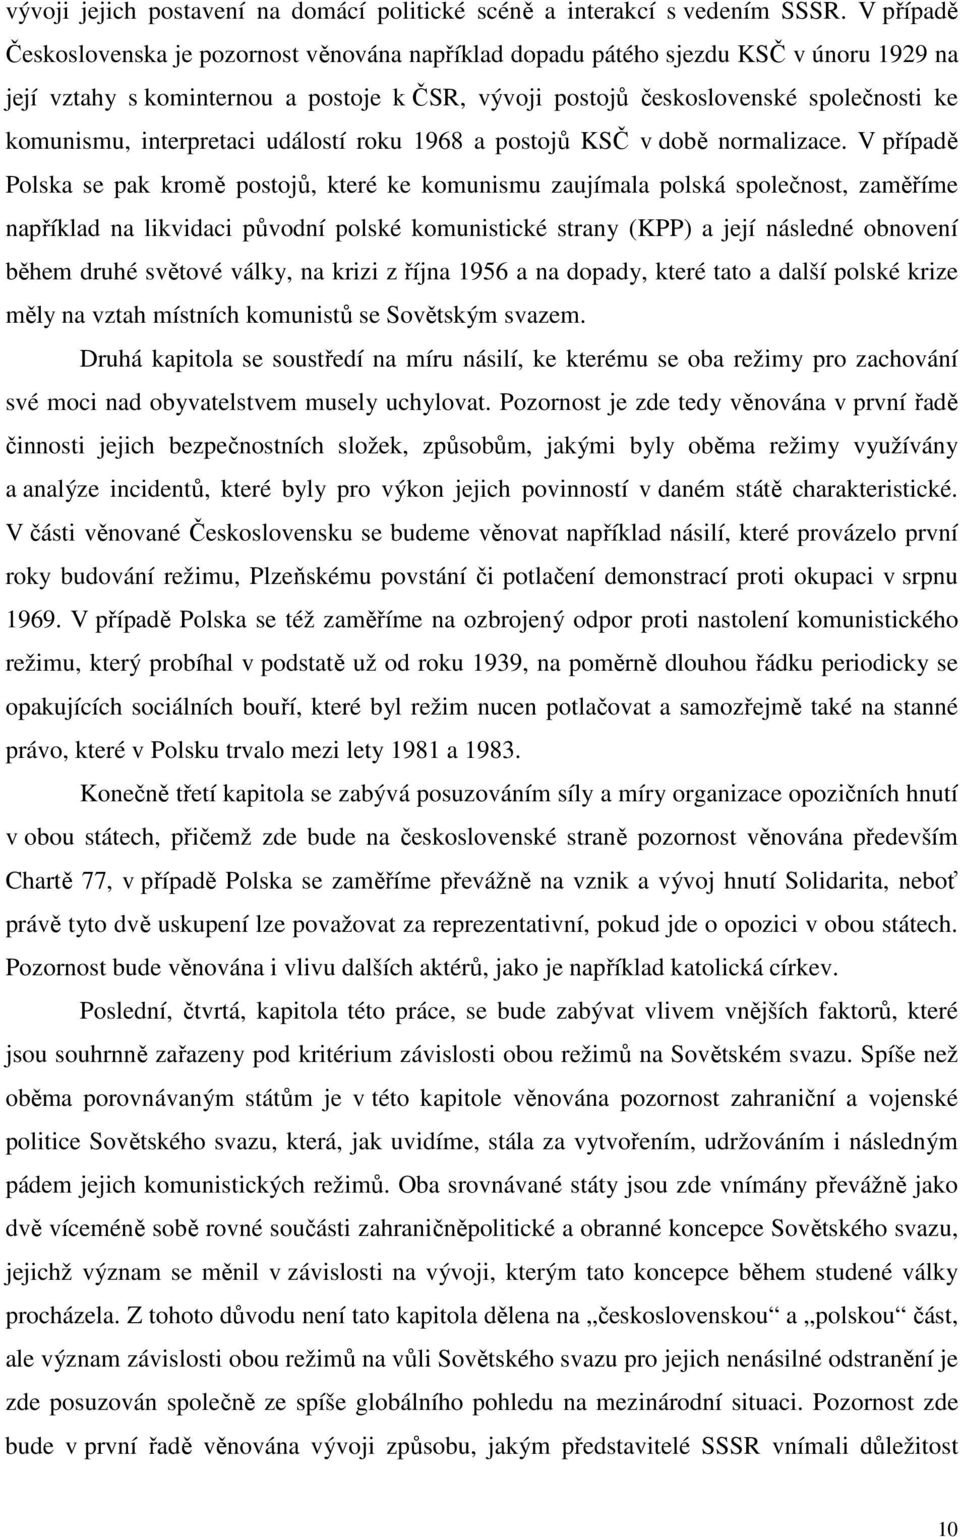 interpretaci událostí roku 1968 a postojů KSČ v době normalizace.